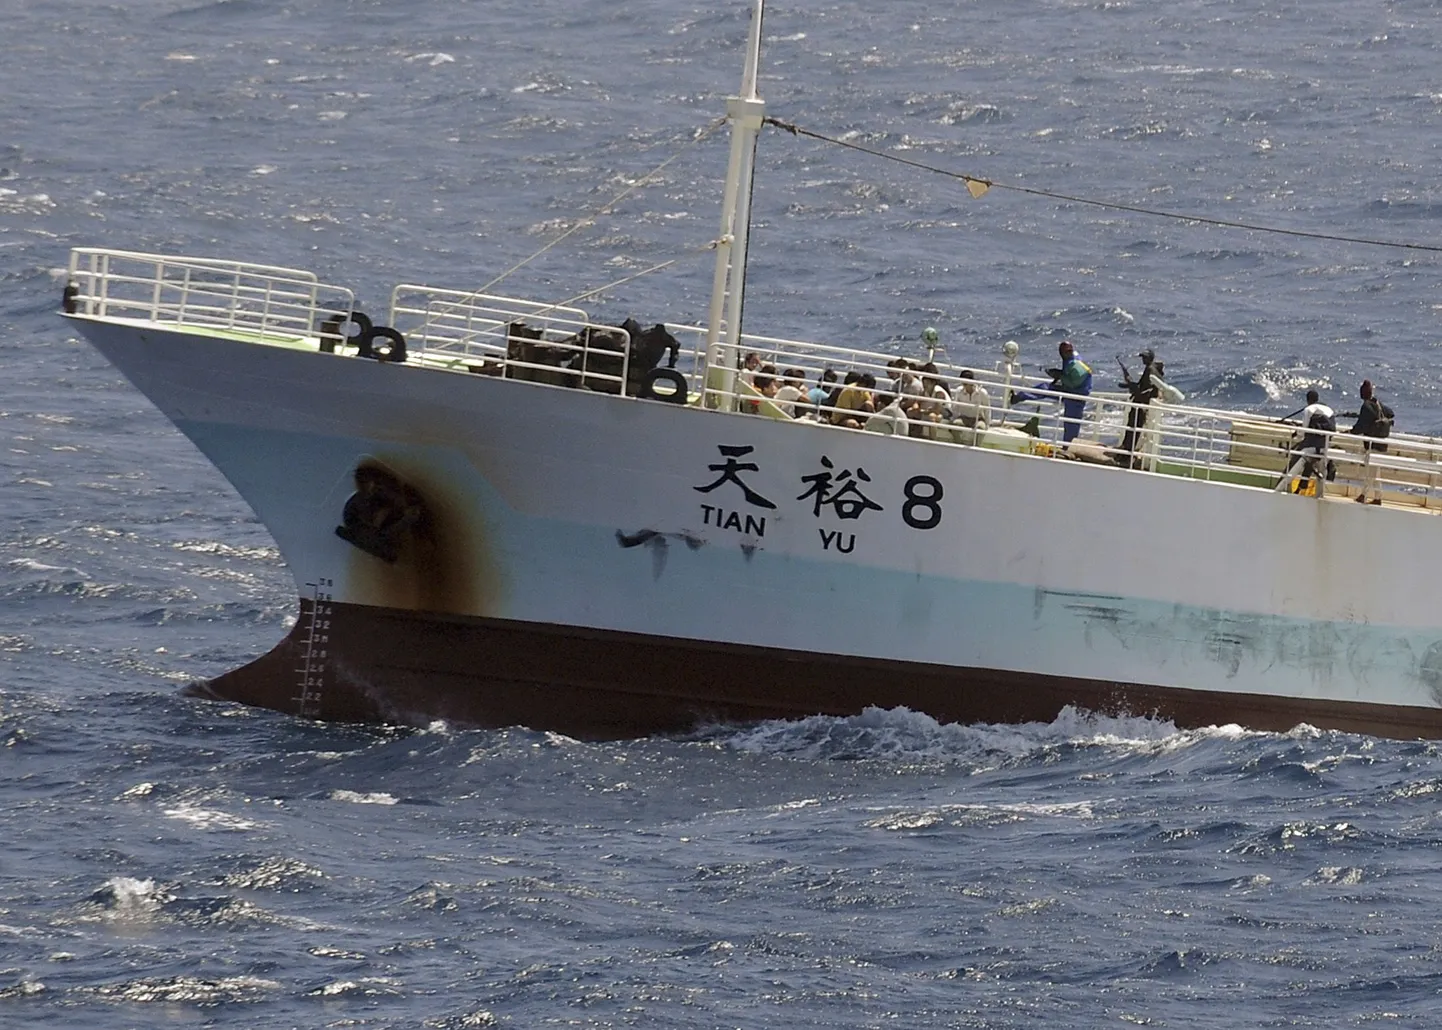 Somaalia piraadid hõiavad enda võimuses ka nädalavahetusel koos meeskonnaga röövitud Hiina kalalaeva FV Tian Yu.